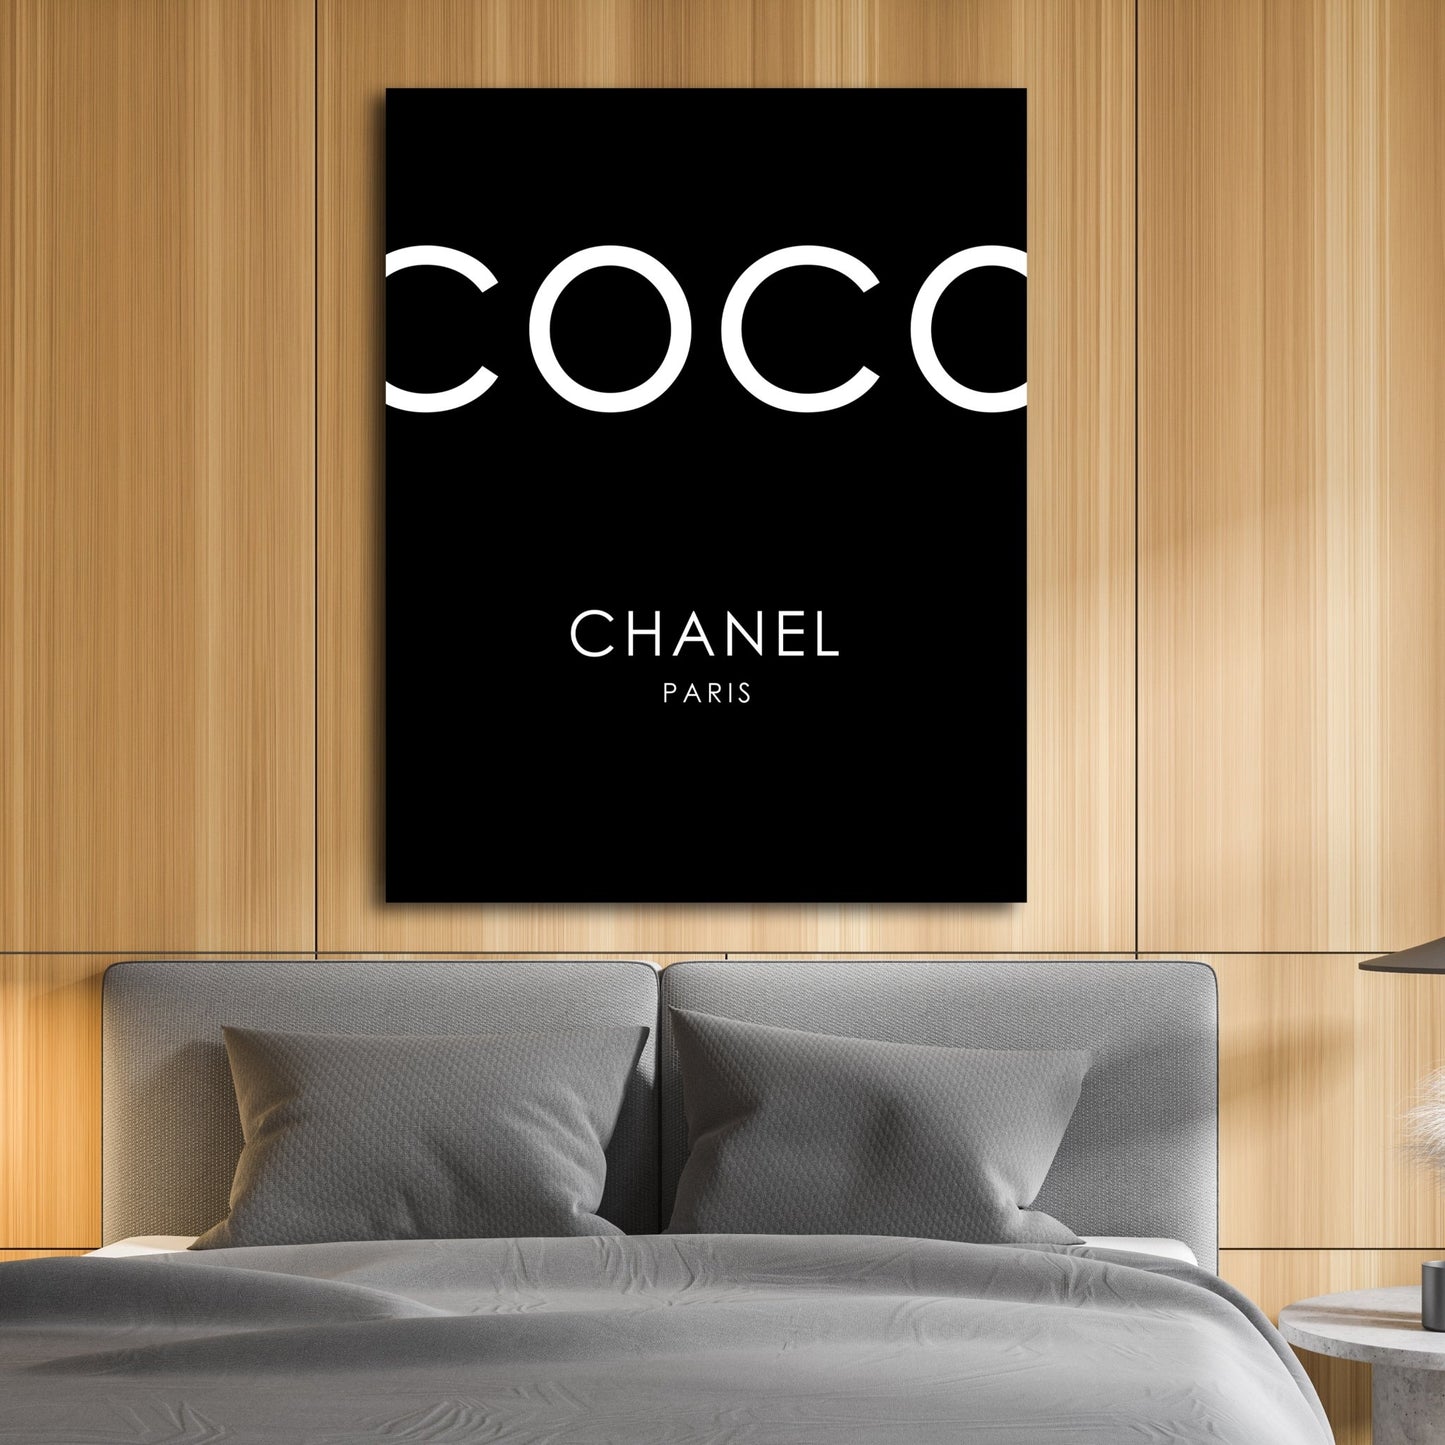 Coco Chanel Design Wall Art